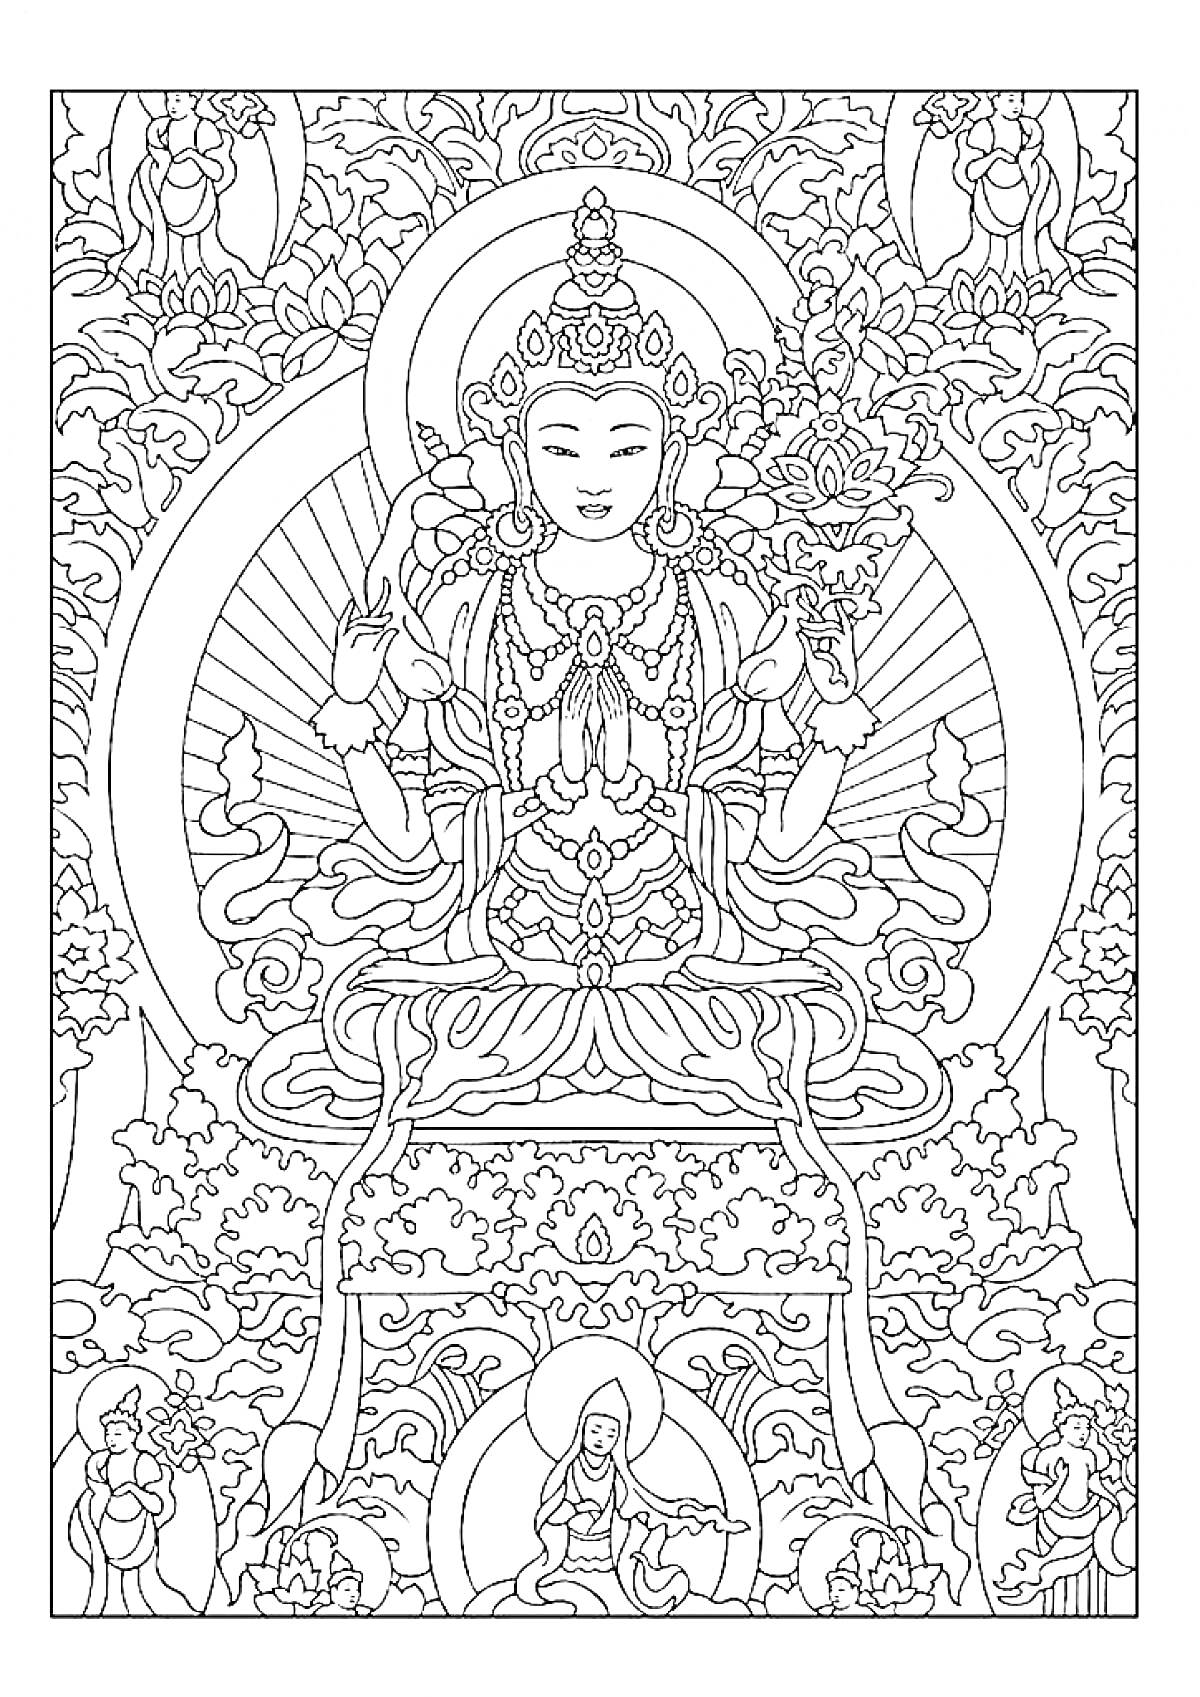 Раскраска Медитирующая фигура в традиционном наряде на троне, окруженная орнаментами и цветами, с элементами природы и другими фигурами